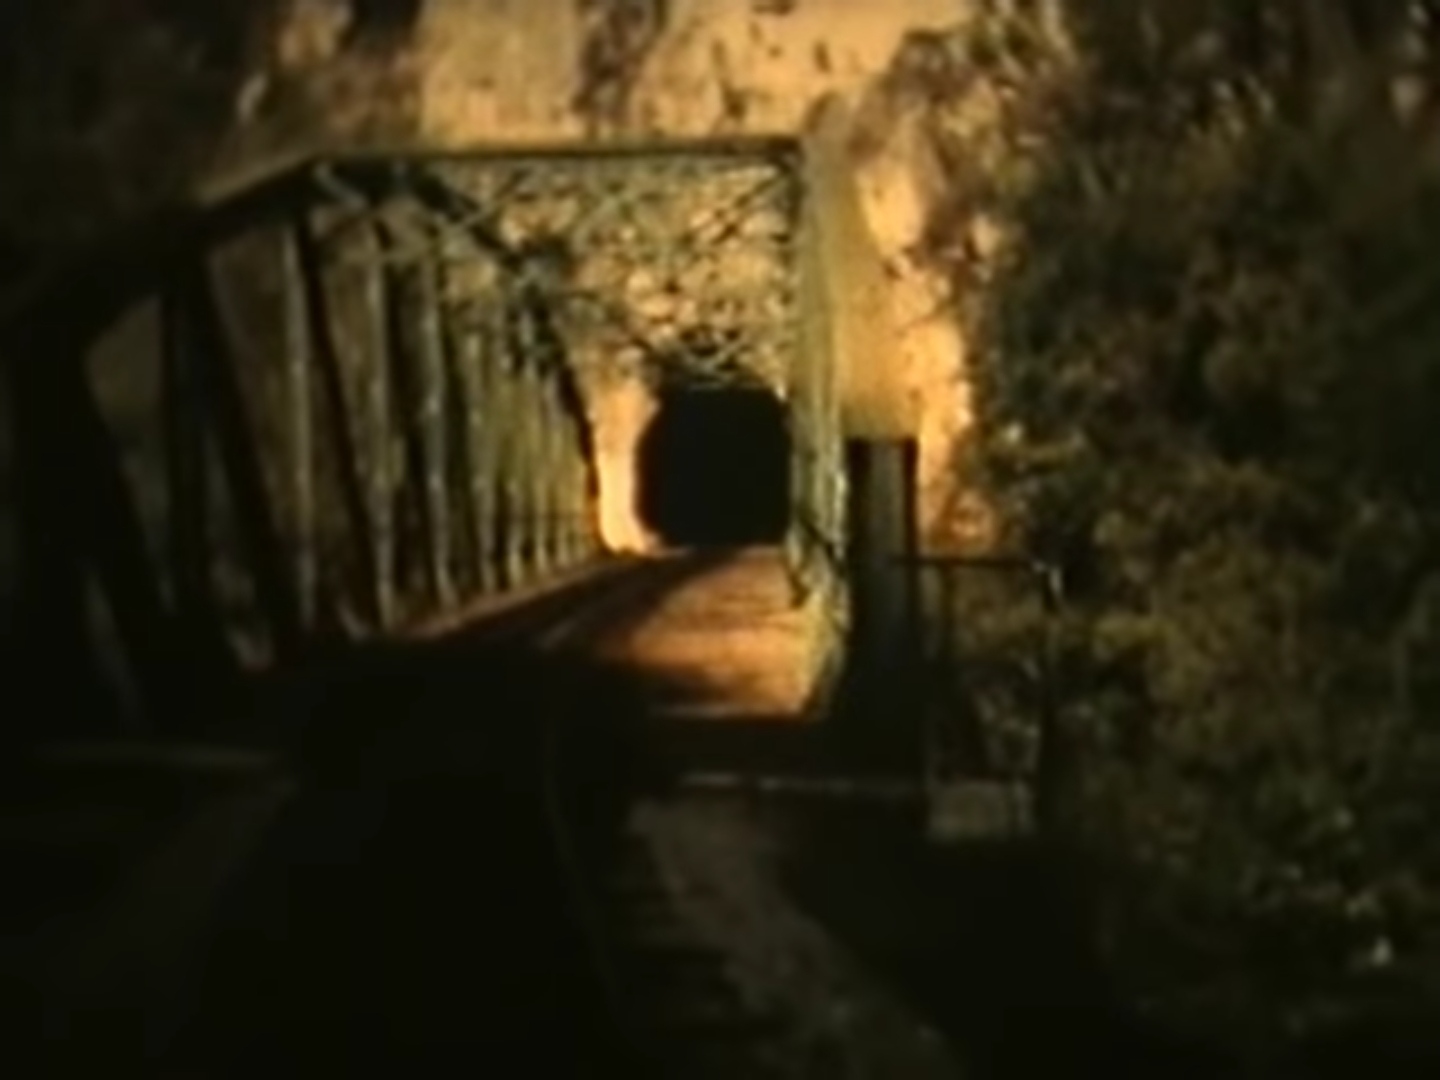 Prvi od ova dva mosta iz pravca Mesića, ulaz u tunel JŽ89